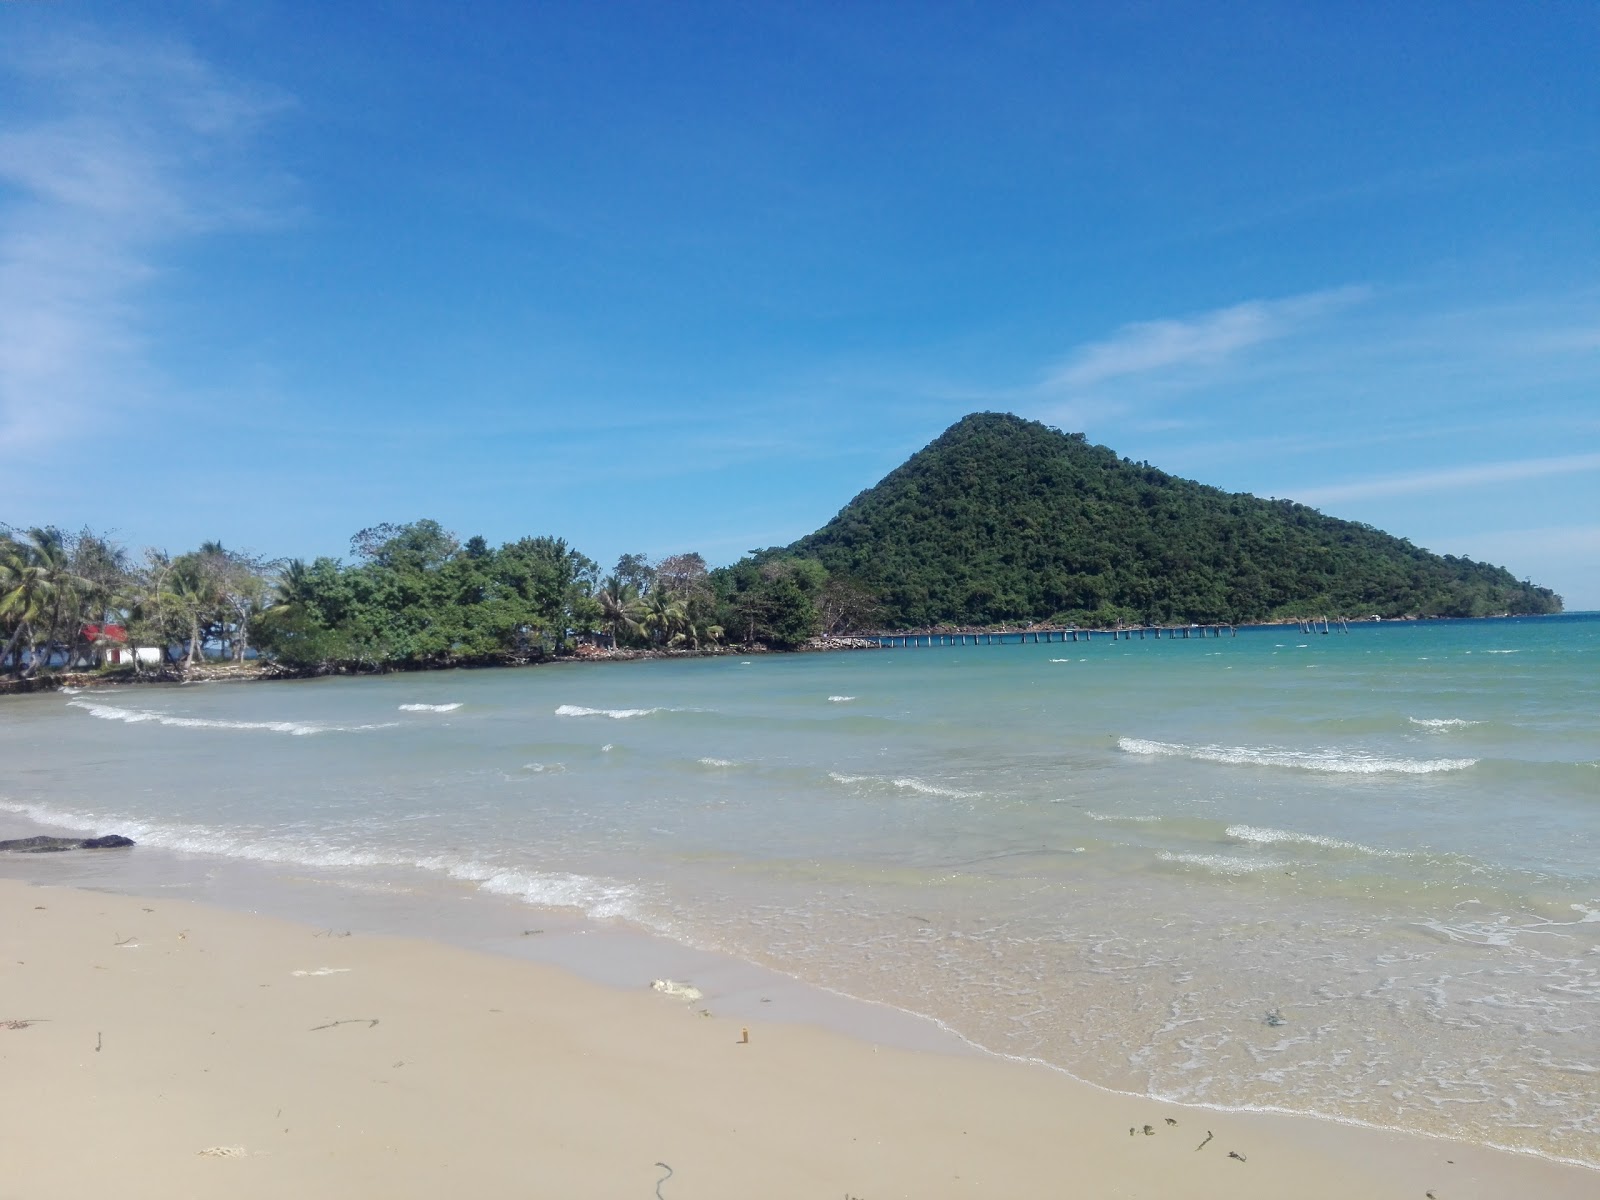 M-Pai Bay'in fotoğrafı parlak kum yüzey ile